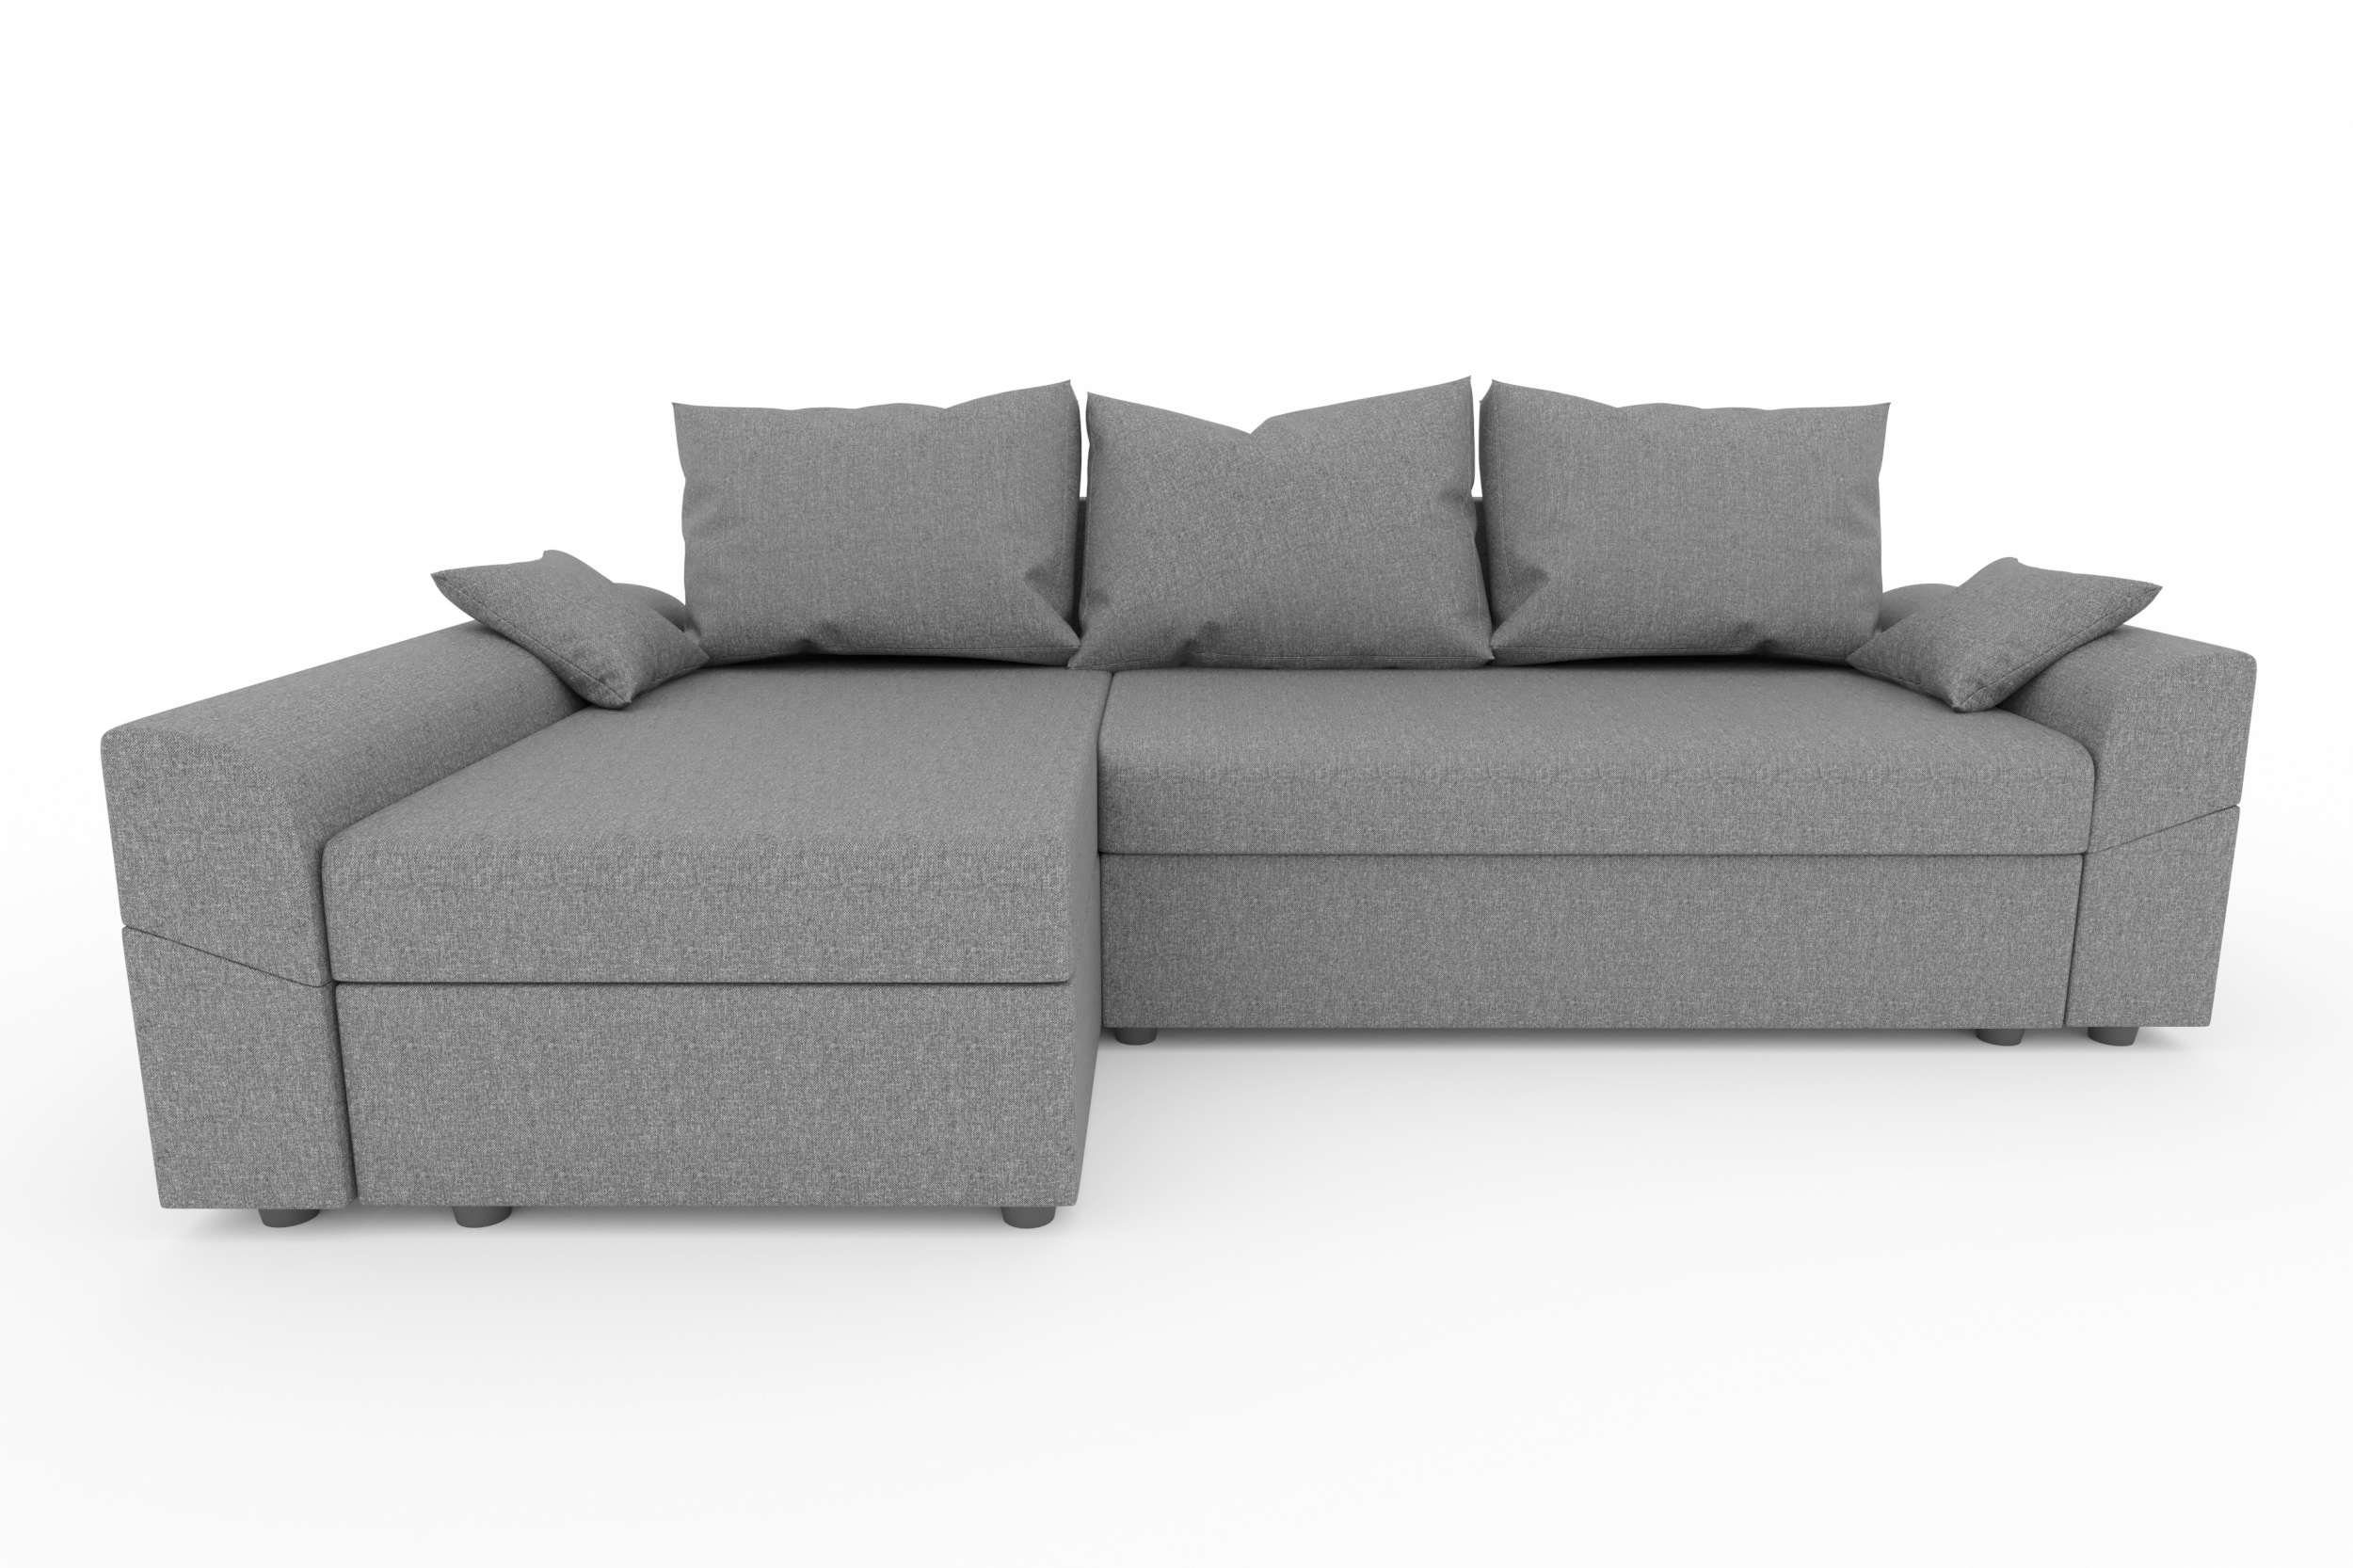 Ecksofa mit Design Eckcouch, L-Form, Sitzkomfort, Modern mit Sofa, Aurora, Stylefy Bettkasten, Bettfunktion,